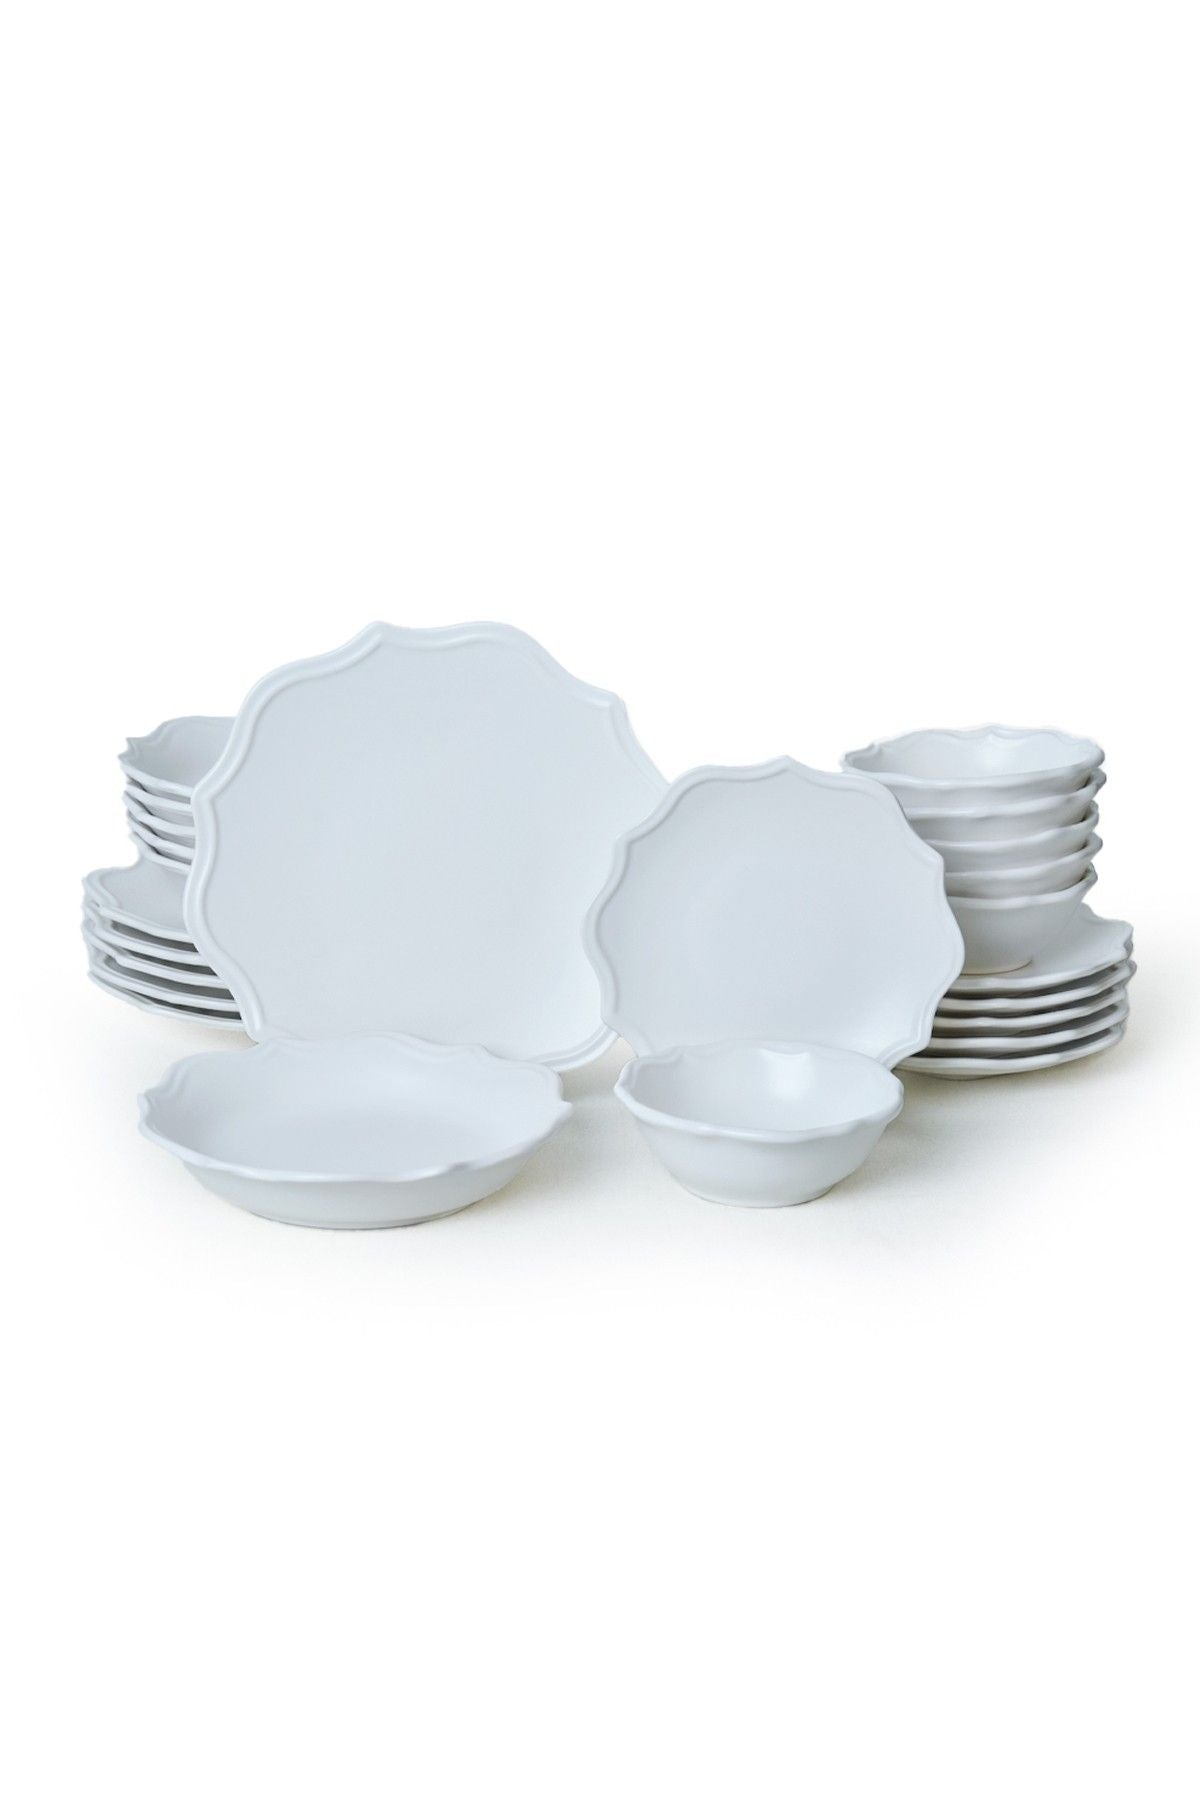 X0001517600000000000000000 - Ceramic Dinner Set (24 Pieces)